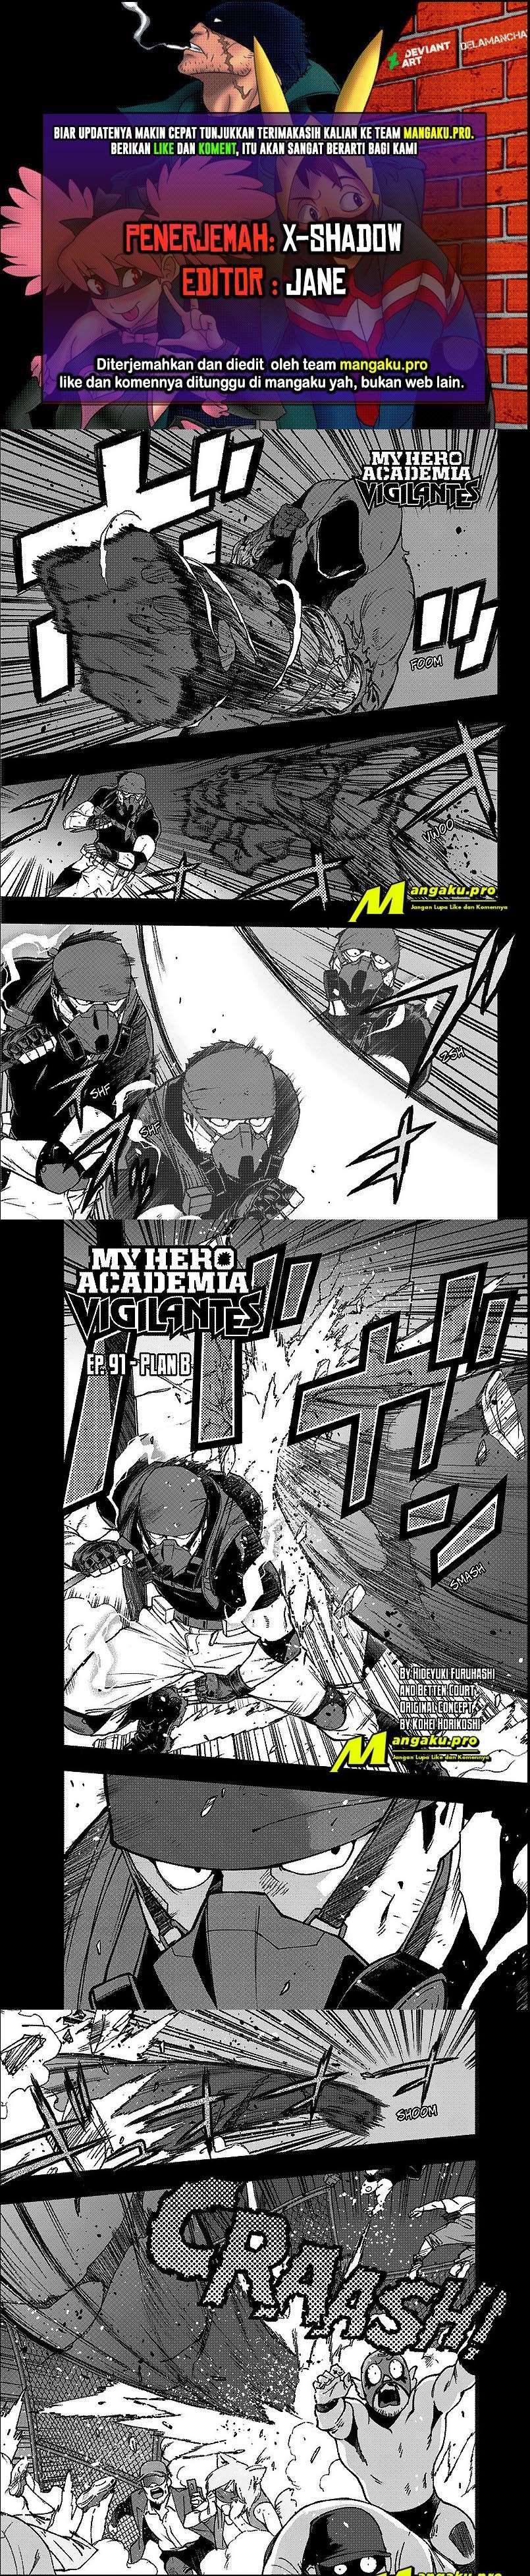 Vigilante: Boku no Hero Academia Illegals Chapter 91